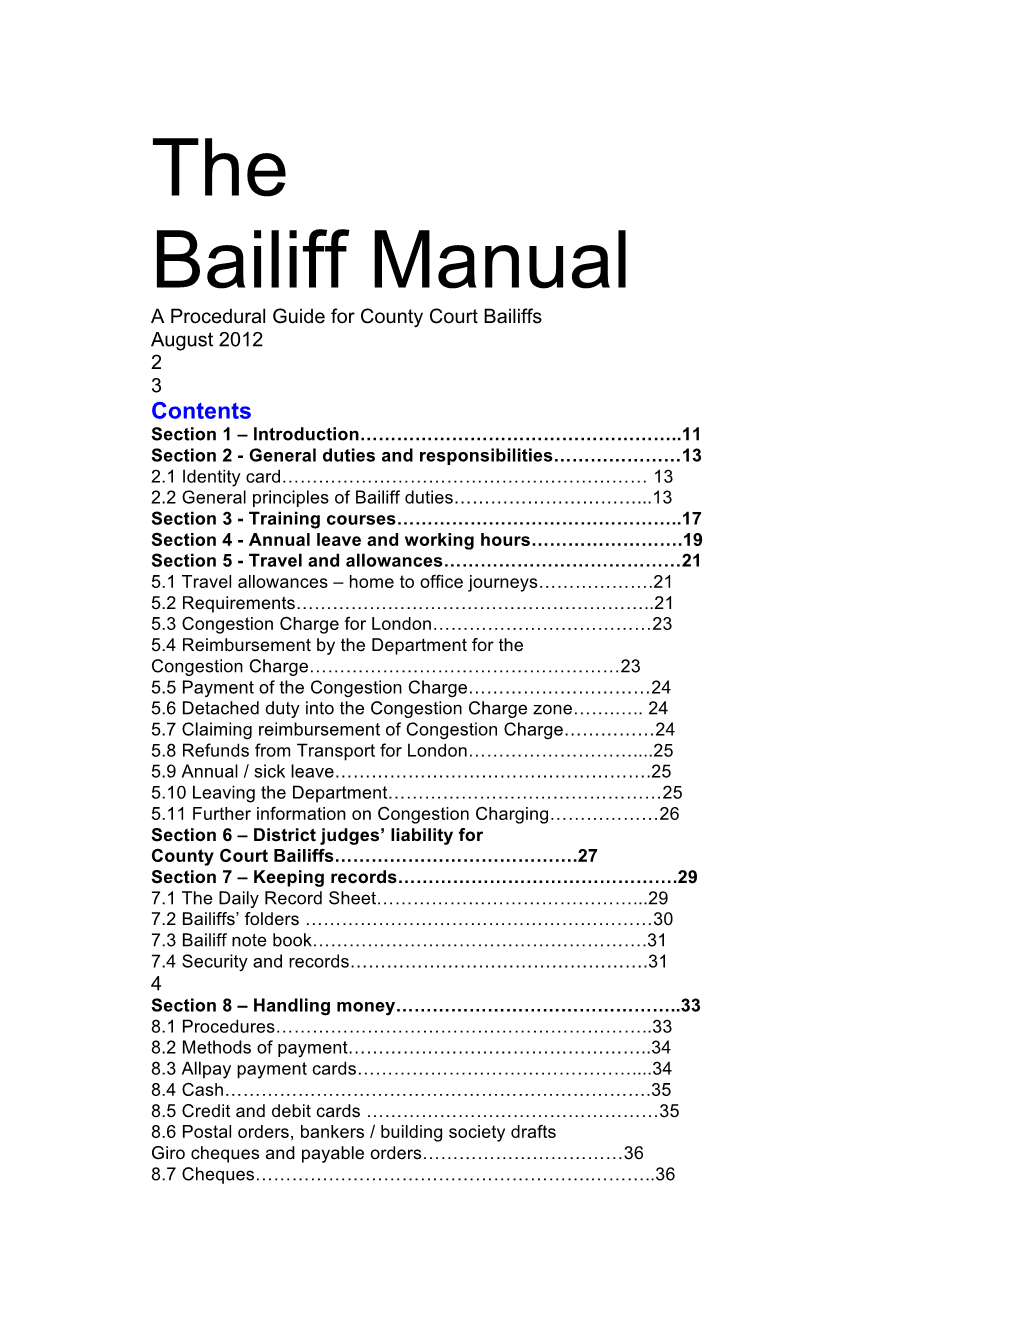 The Bailiff Manual